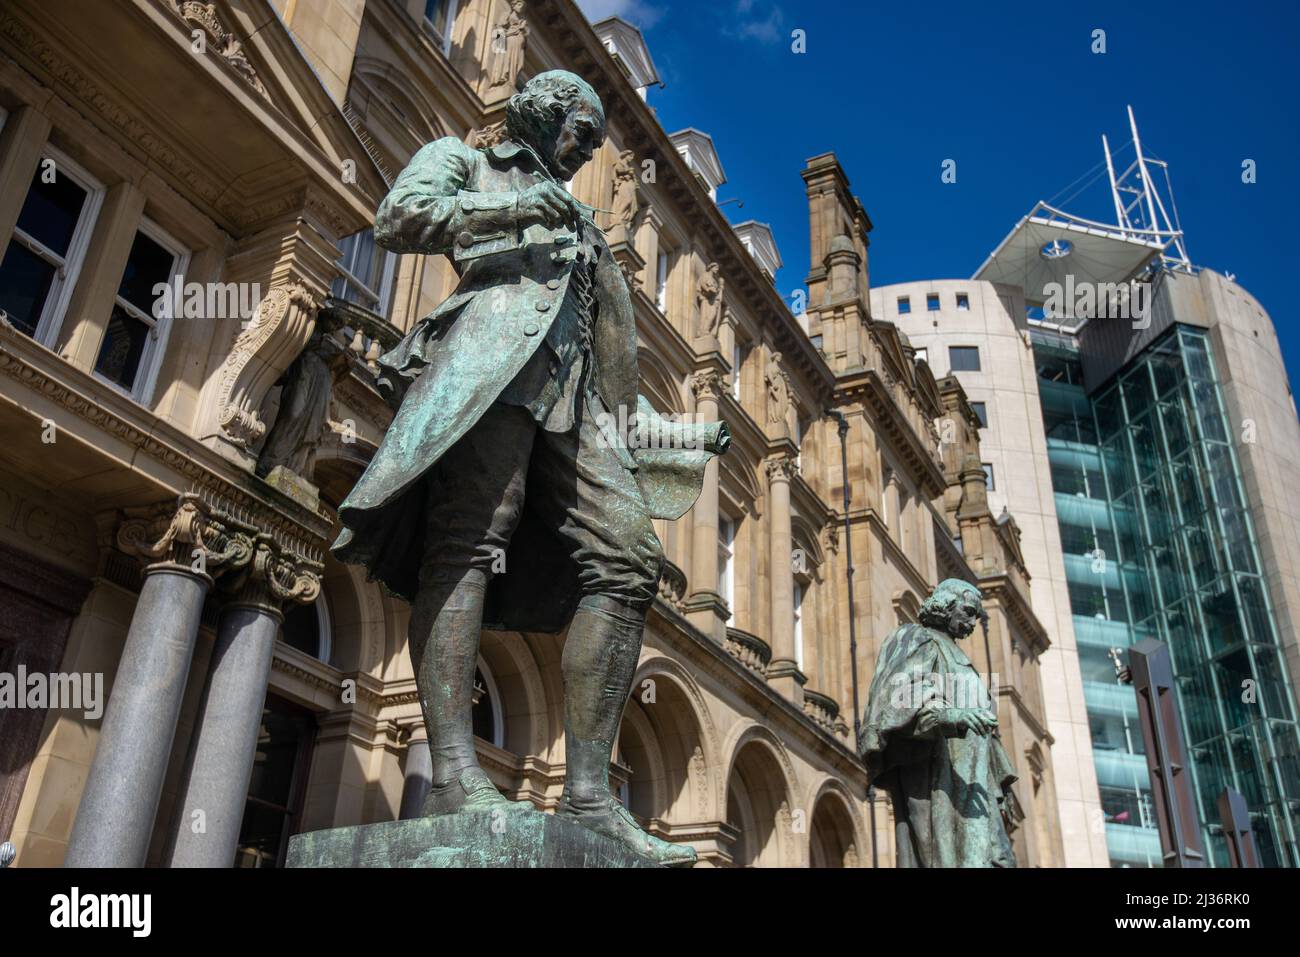 Statue von James Watt ein berühmter Ingenieur vor dem ehemaligen General Post Office in City Square, Leeds, West Yorkshire, England, Großbritannien Stockfoto